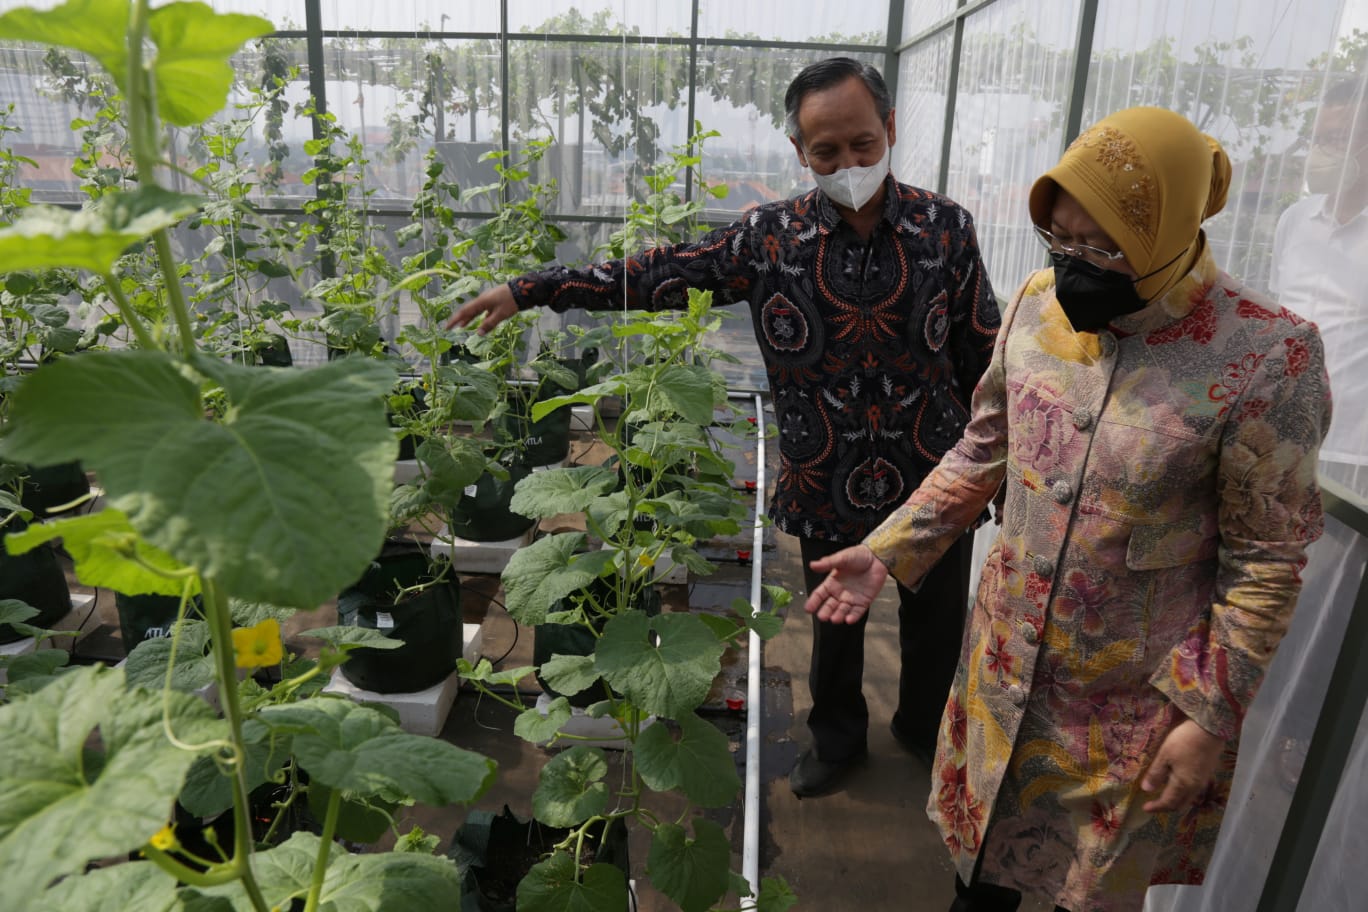 Social Minister Risma Inaugurates Smart Urban Farming